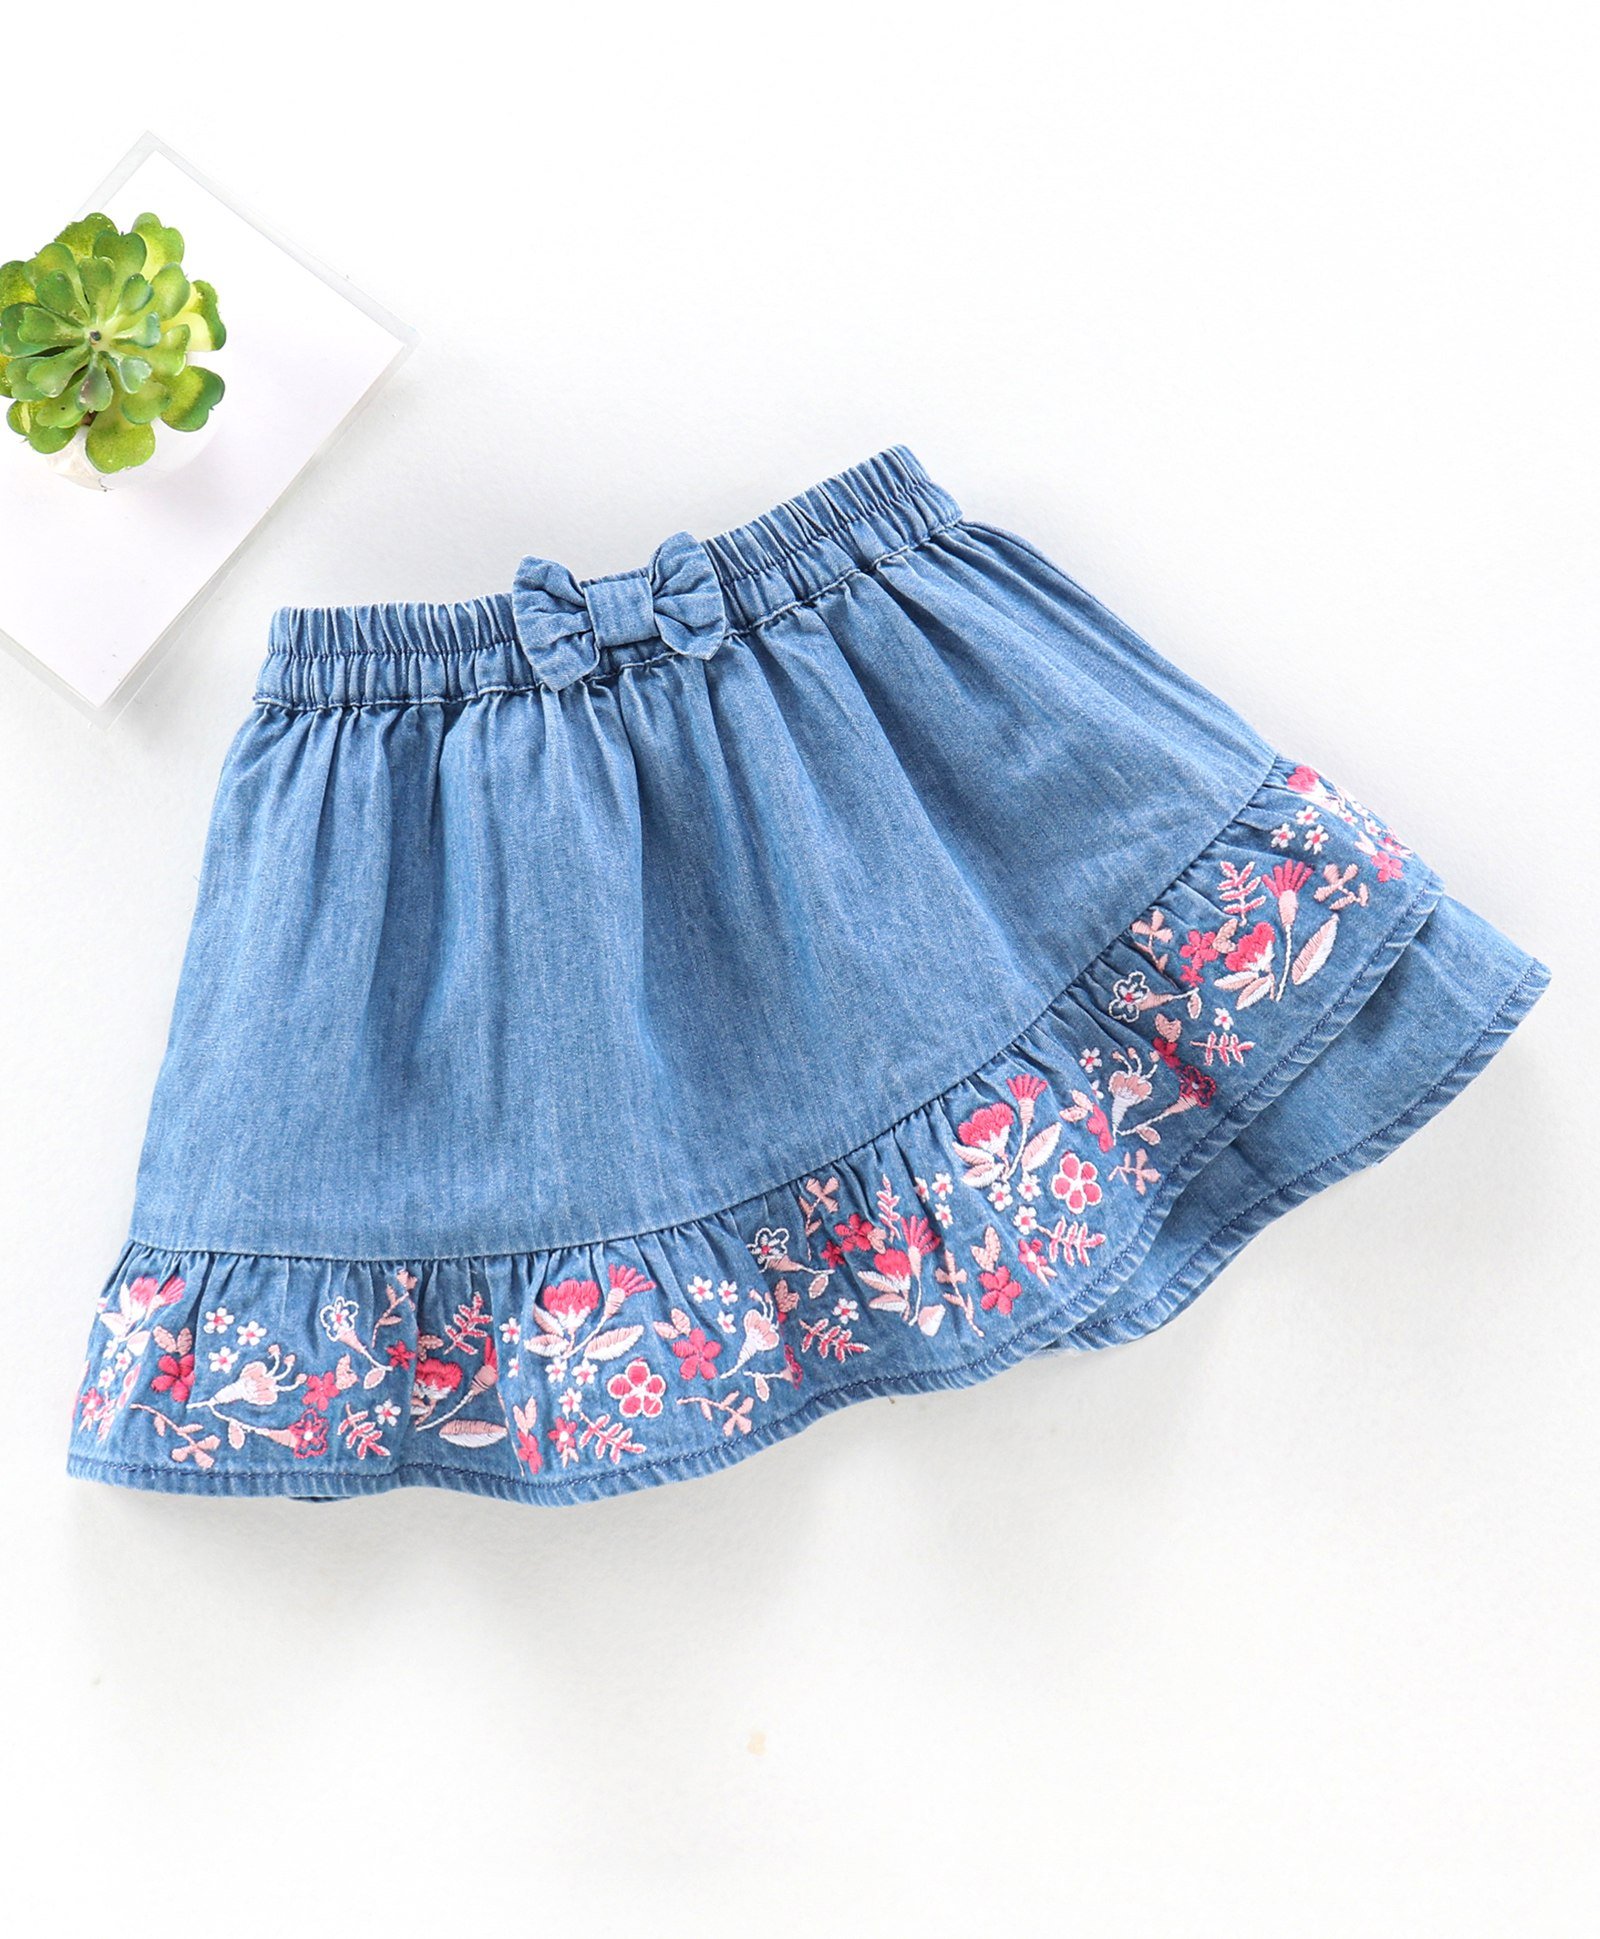 embroidered denim skirt knee length